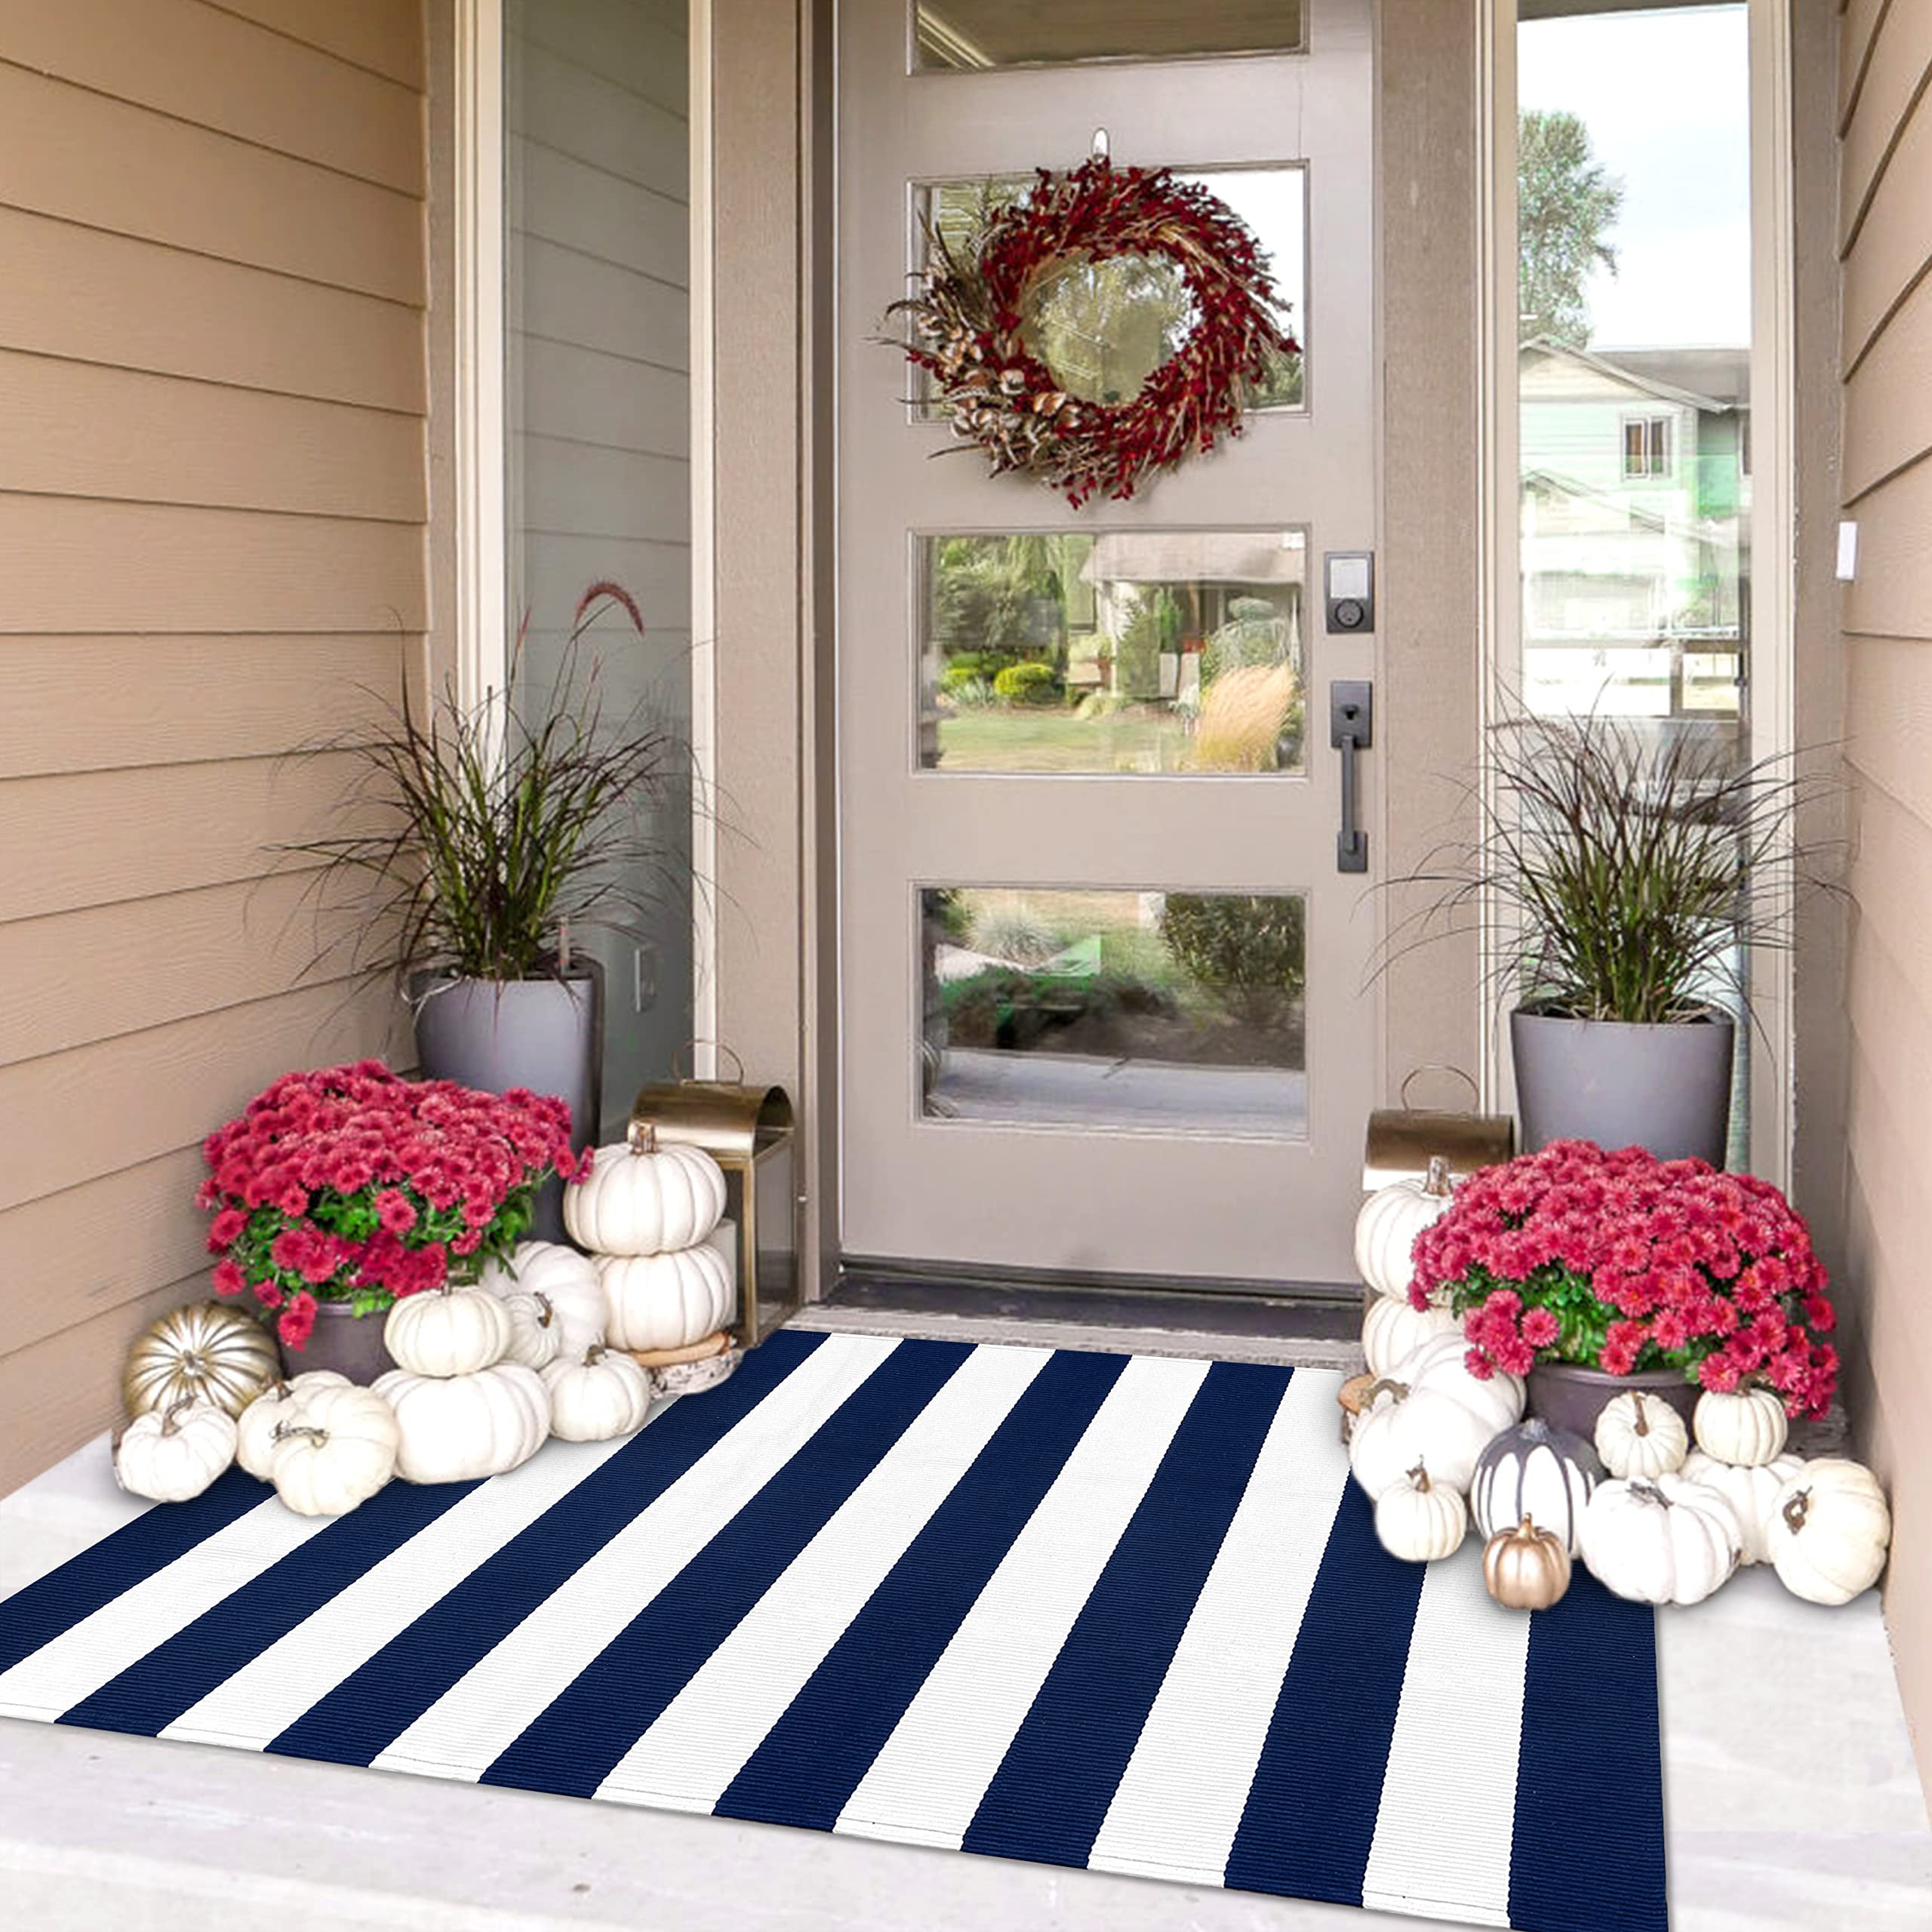 Catlerio Indoor/Outdoor Non-Slip Rug, Front Door Welcome Mat for Outside Porch Entrance, Home Entryway Farmhouse Decor, Size: 60x40cm